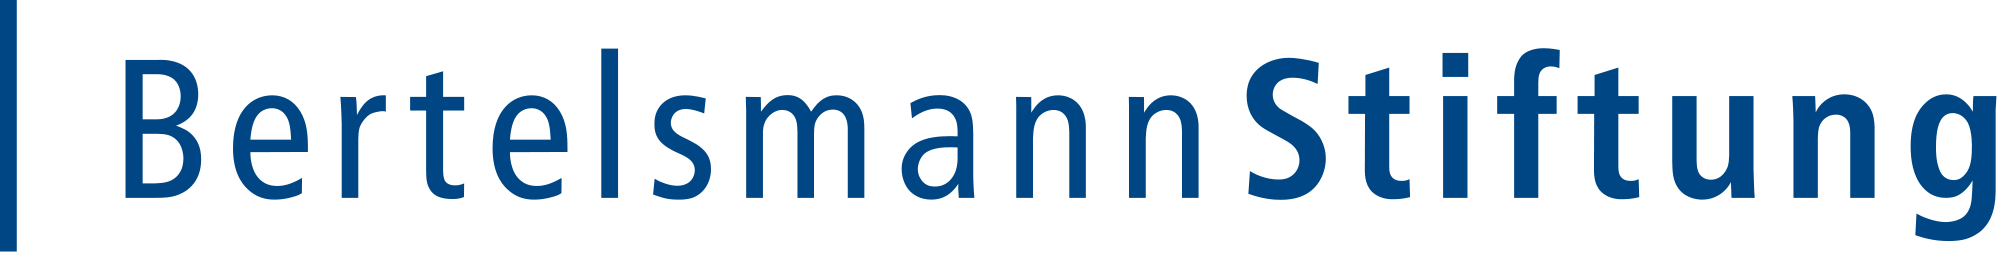 2000px-Logo_Bertelsmann-Stiftung.svg